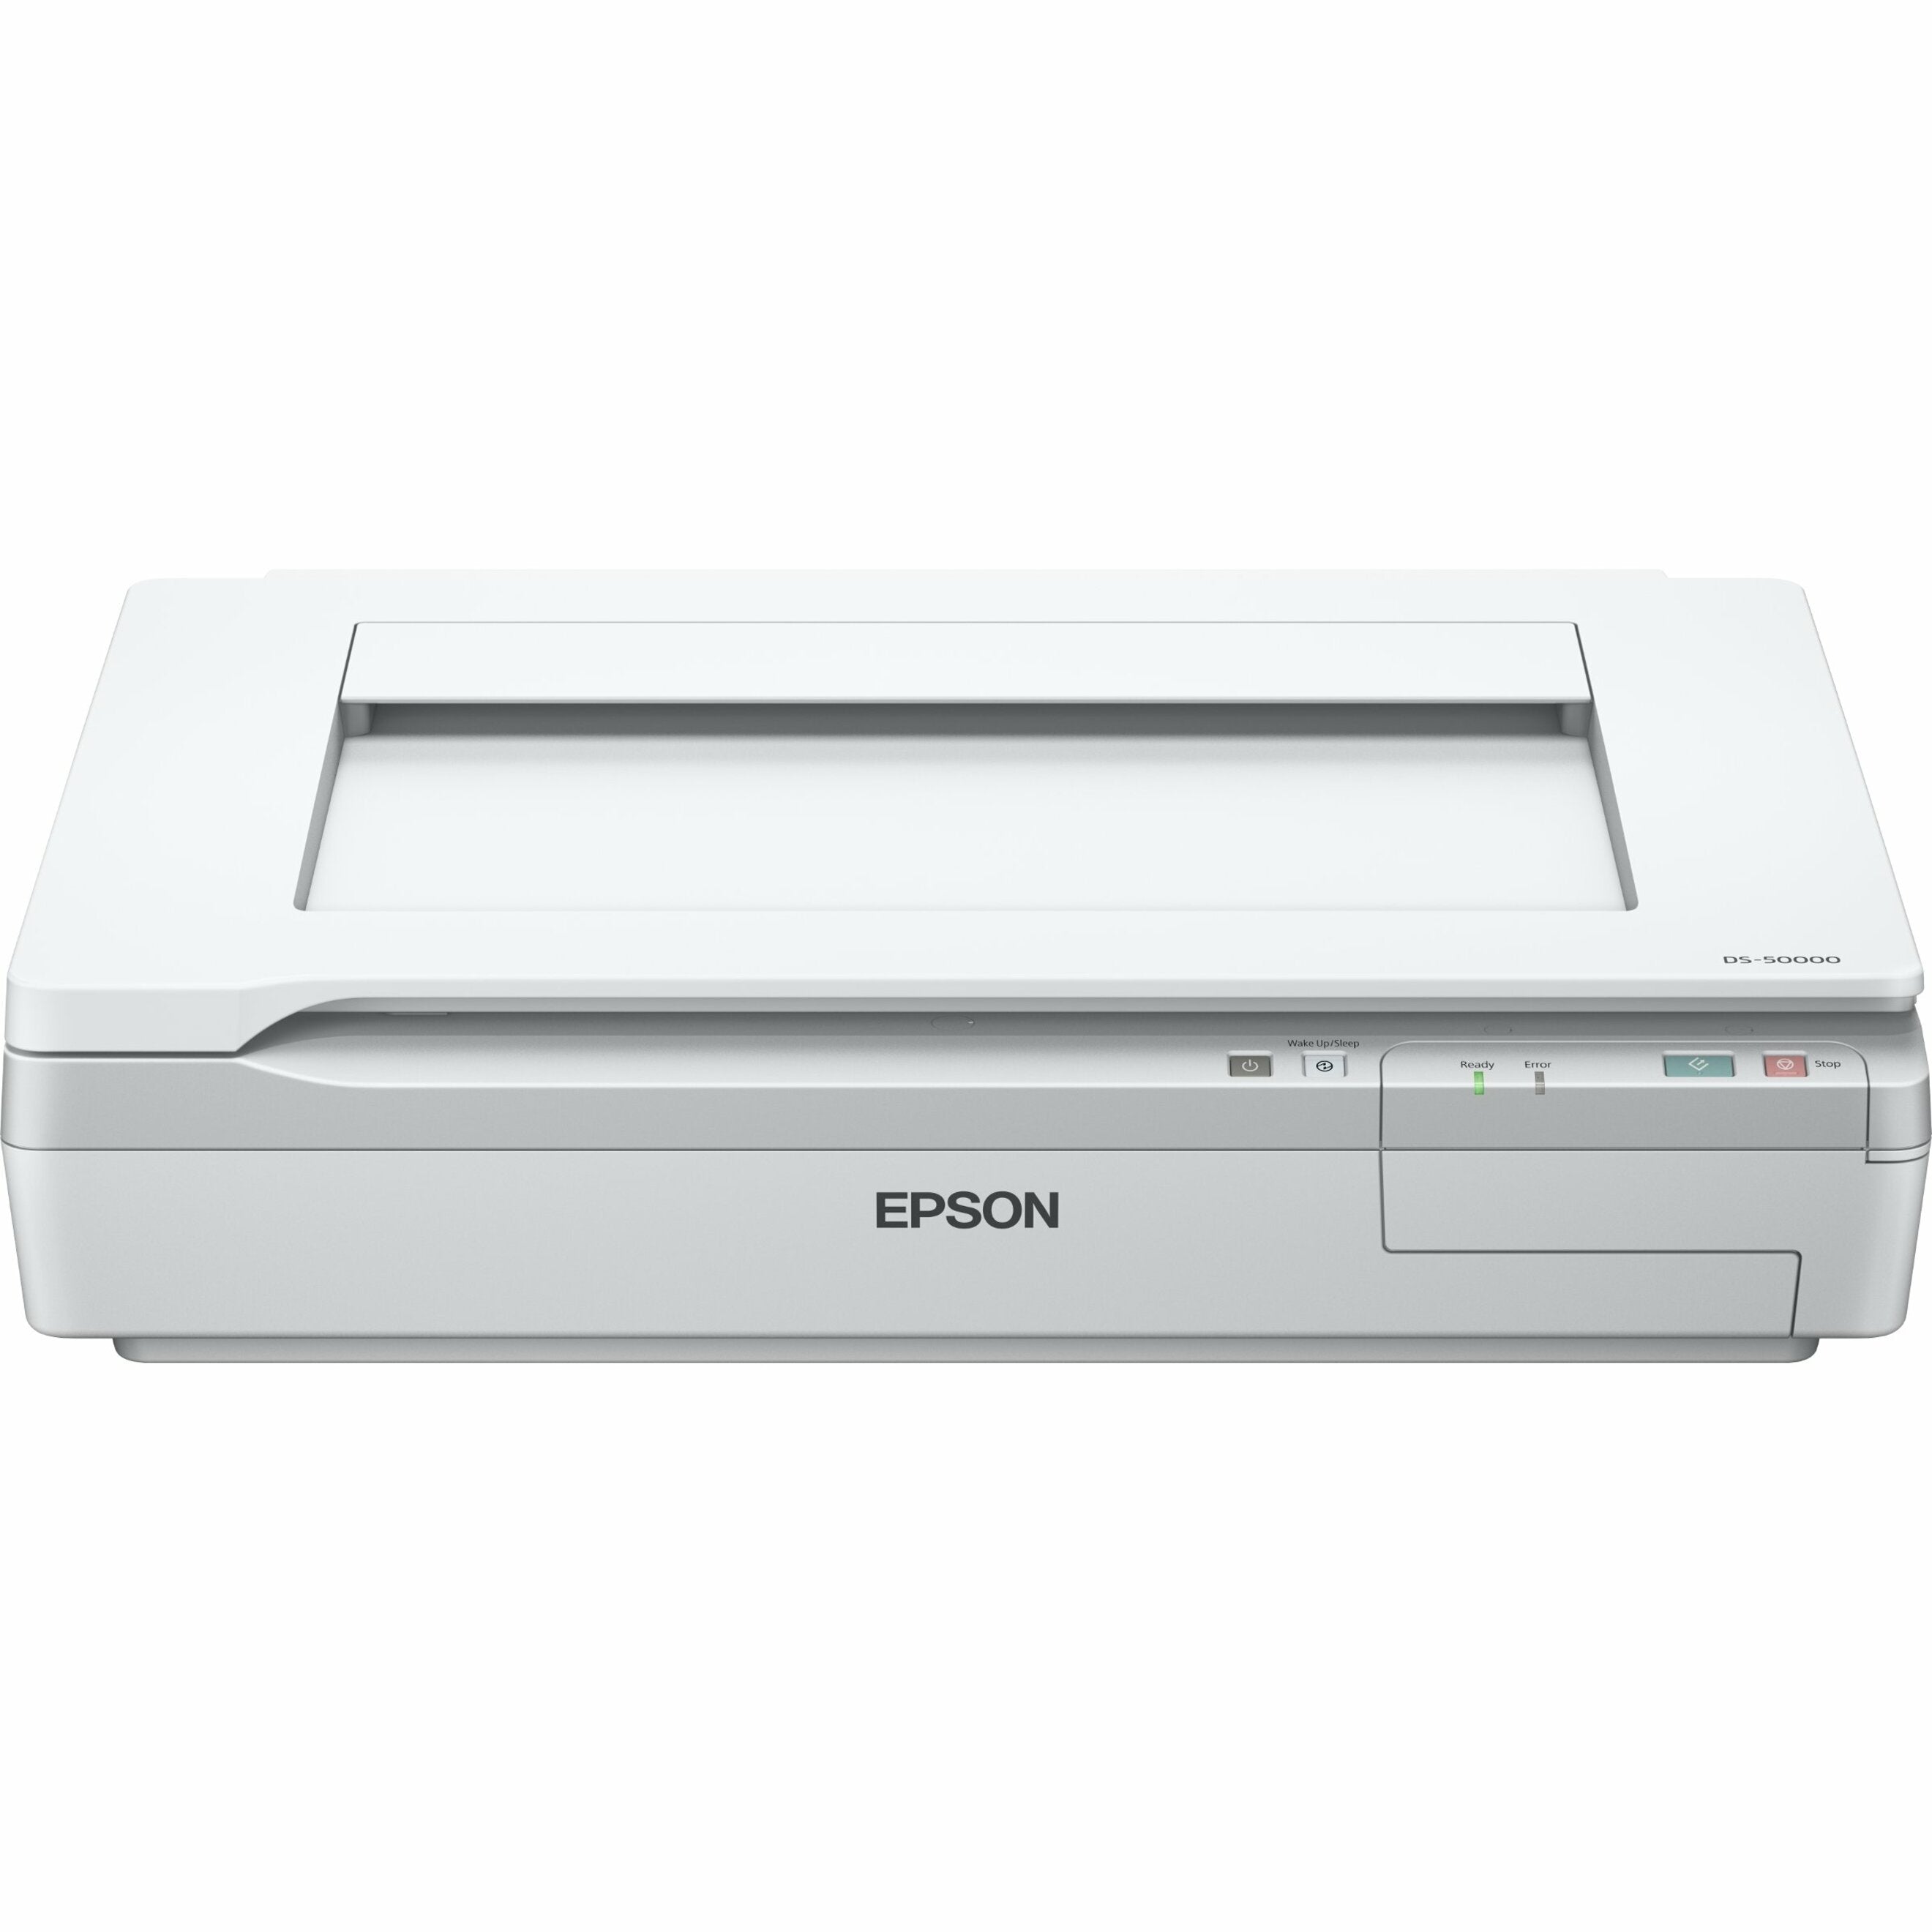 Epson B11B204121 WorkForce DS-50000 Document Scanner, 11.70 x 17 Flatbed Scanner, Color, 600 dpi